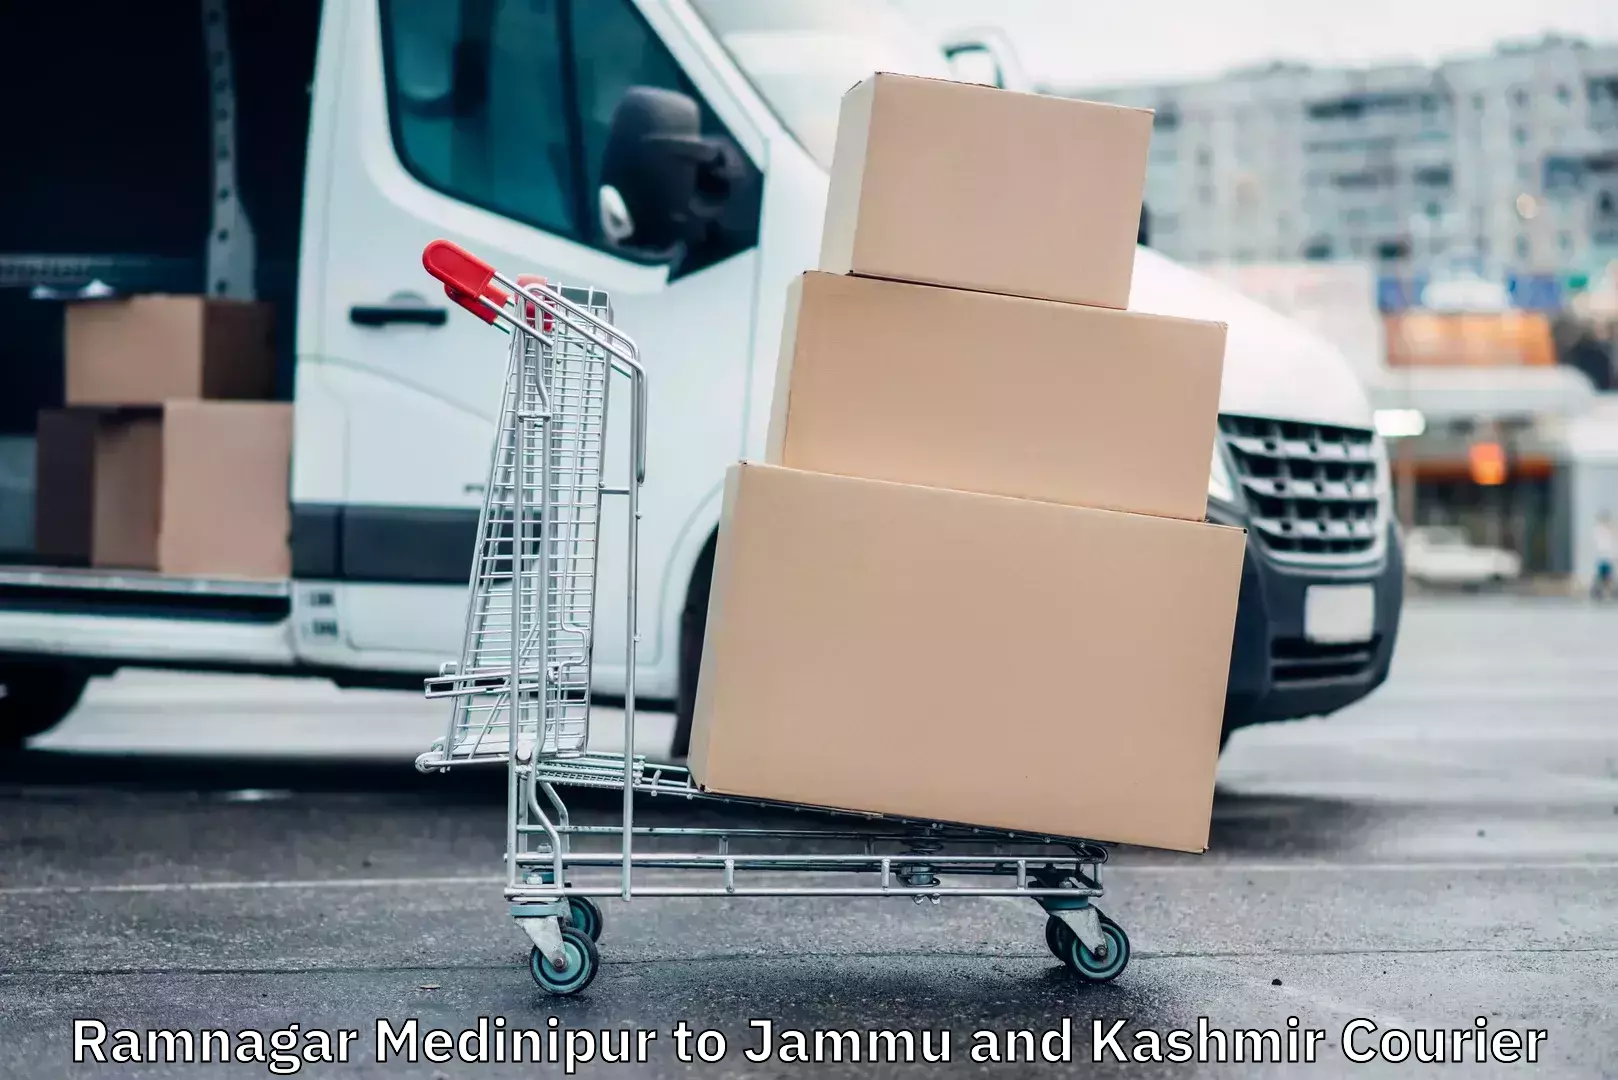 Door-to-door freight service Ramnagar Medinipur to Jammu and Kashmir